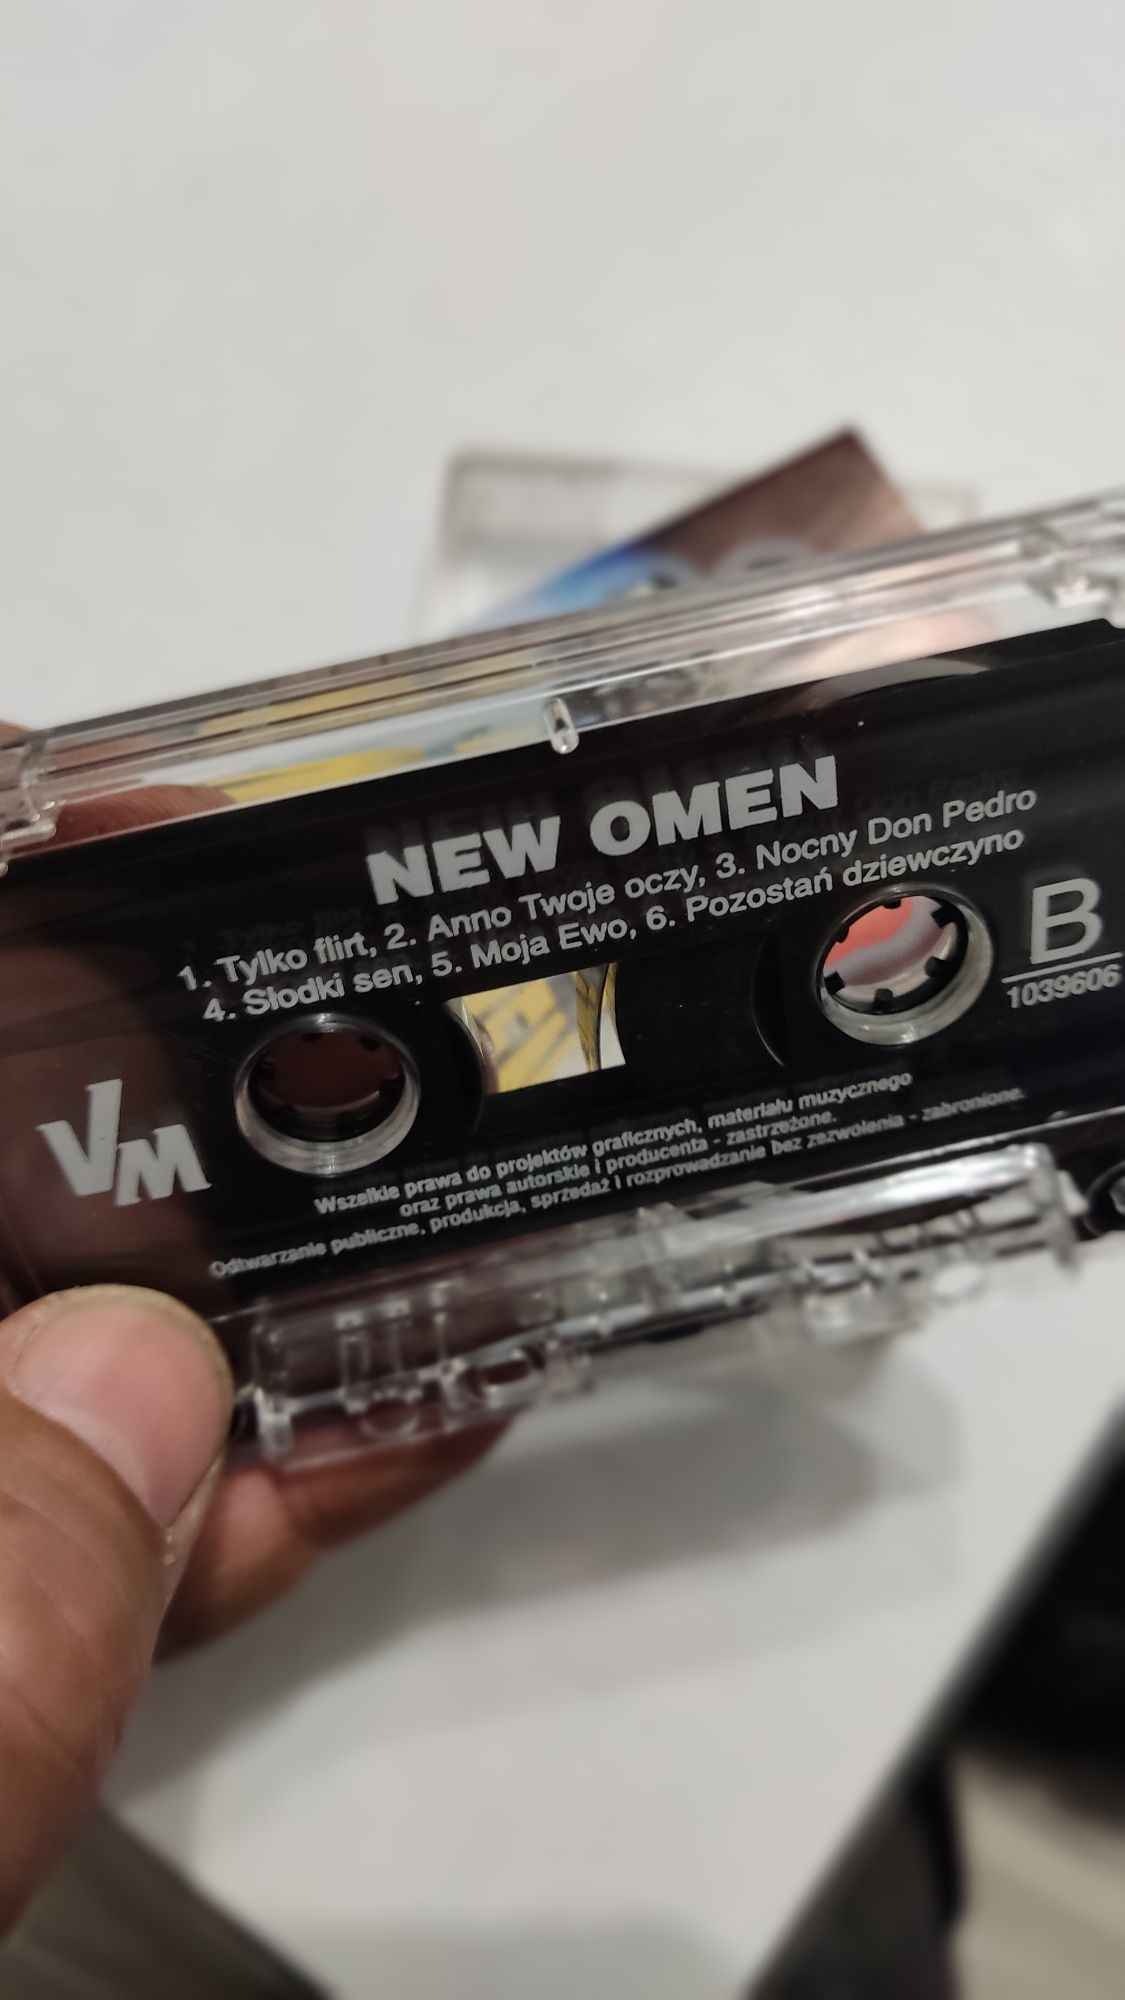 New Omen Wizyta kaseta audio disco polo